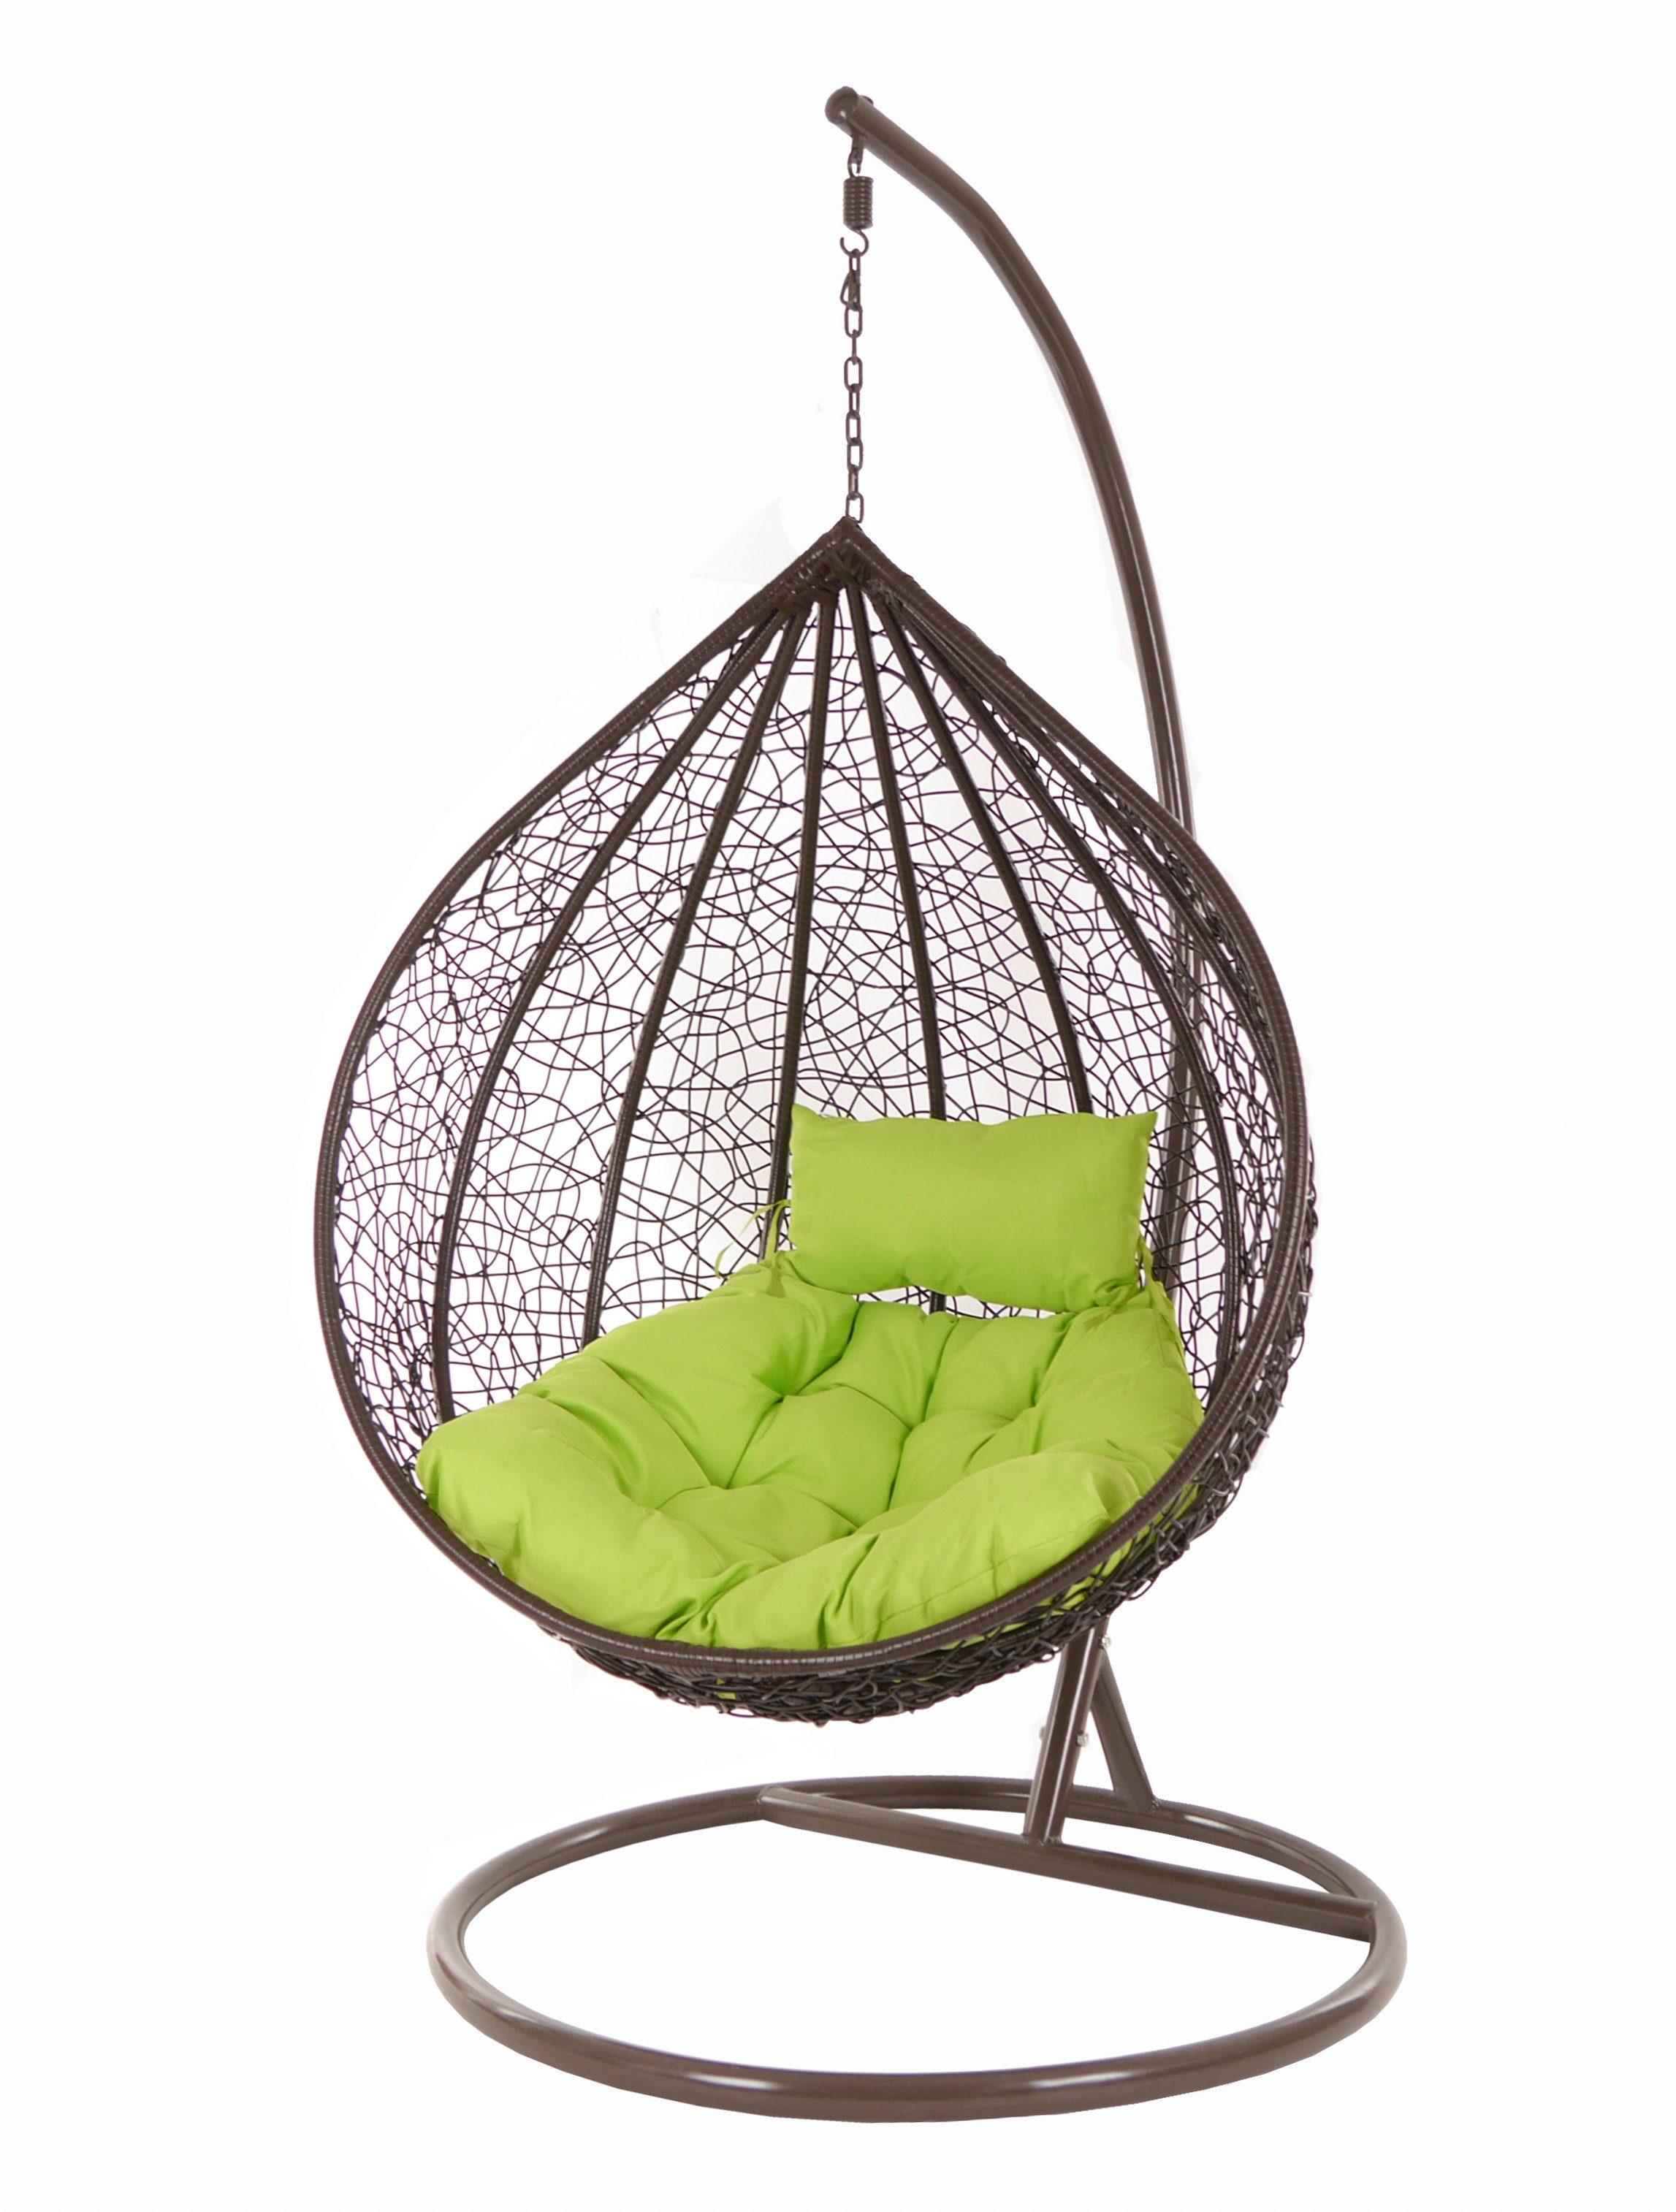 Hängesessel apfelgrün Chair, Hängesessel (6068 KIDEO und green) mit Loungemöbel dunkelbraun, Gestell Swing darkbrown, Hängesessel apple MANACOR Kissen,